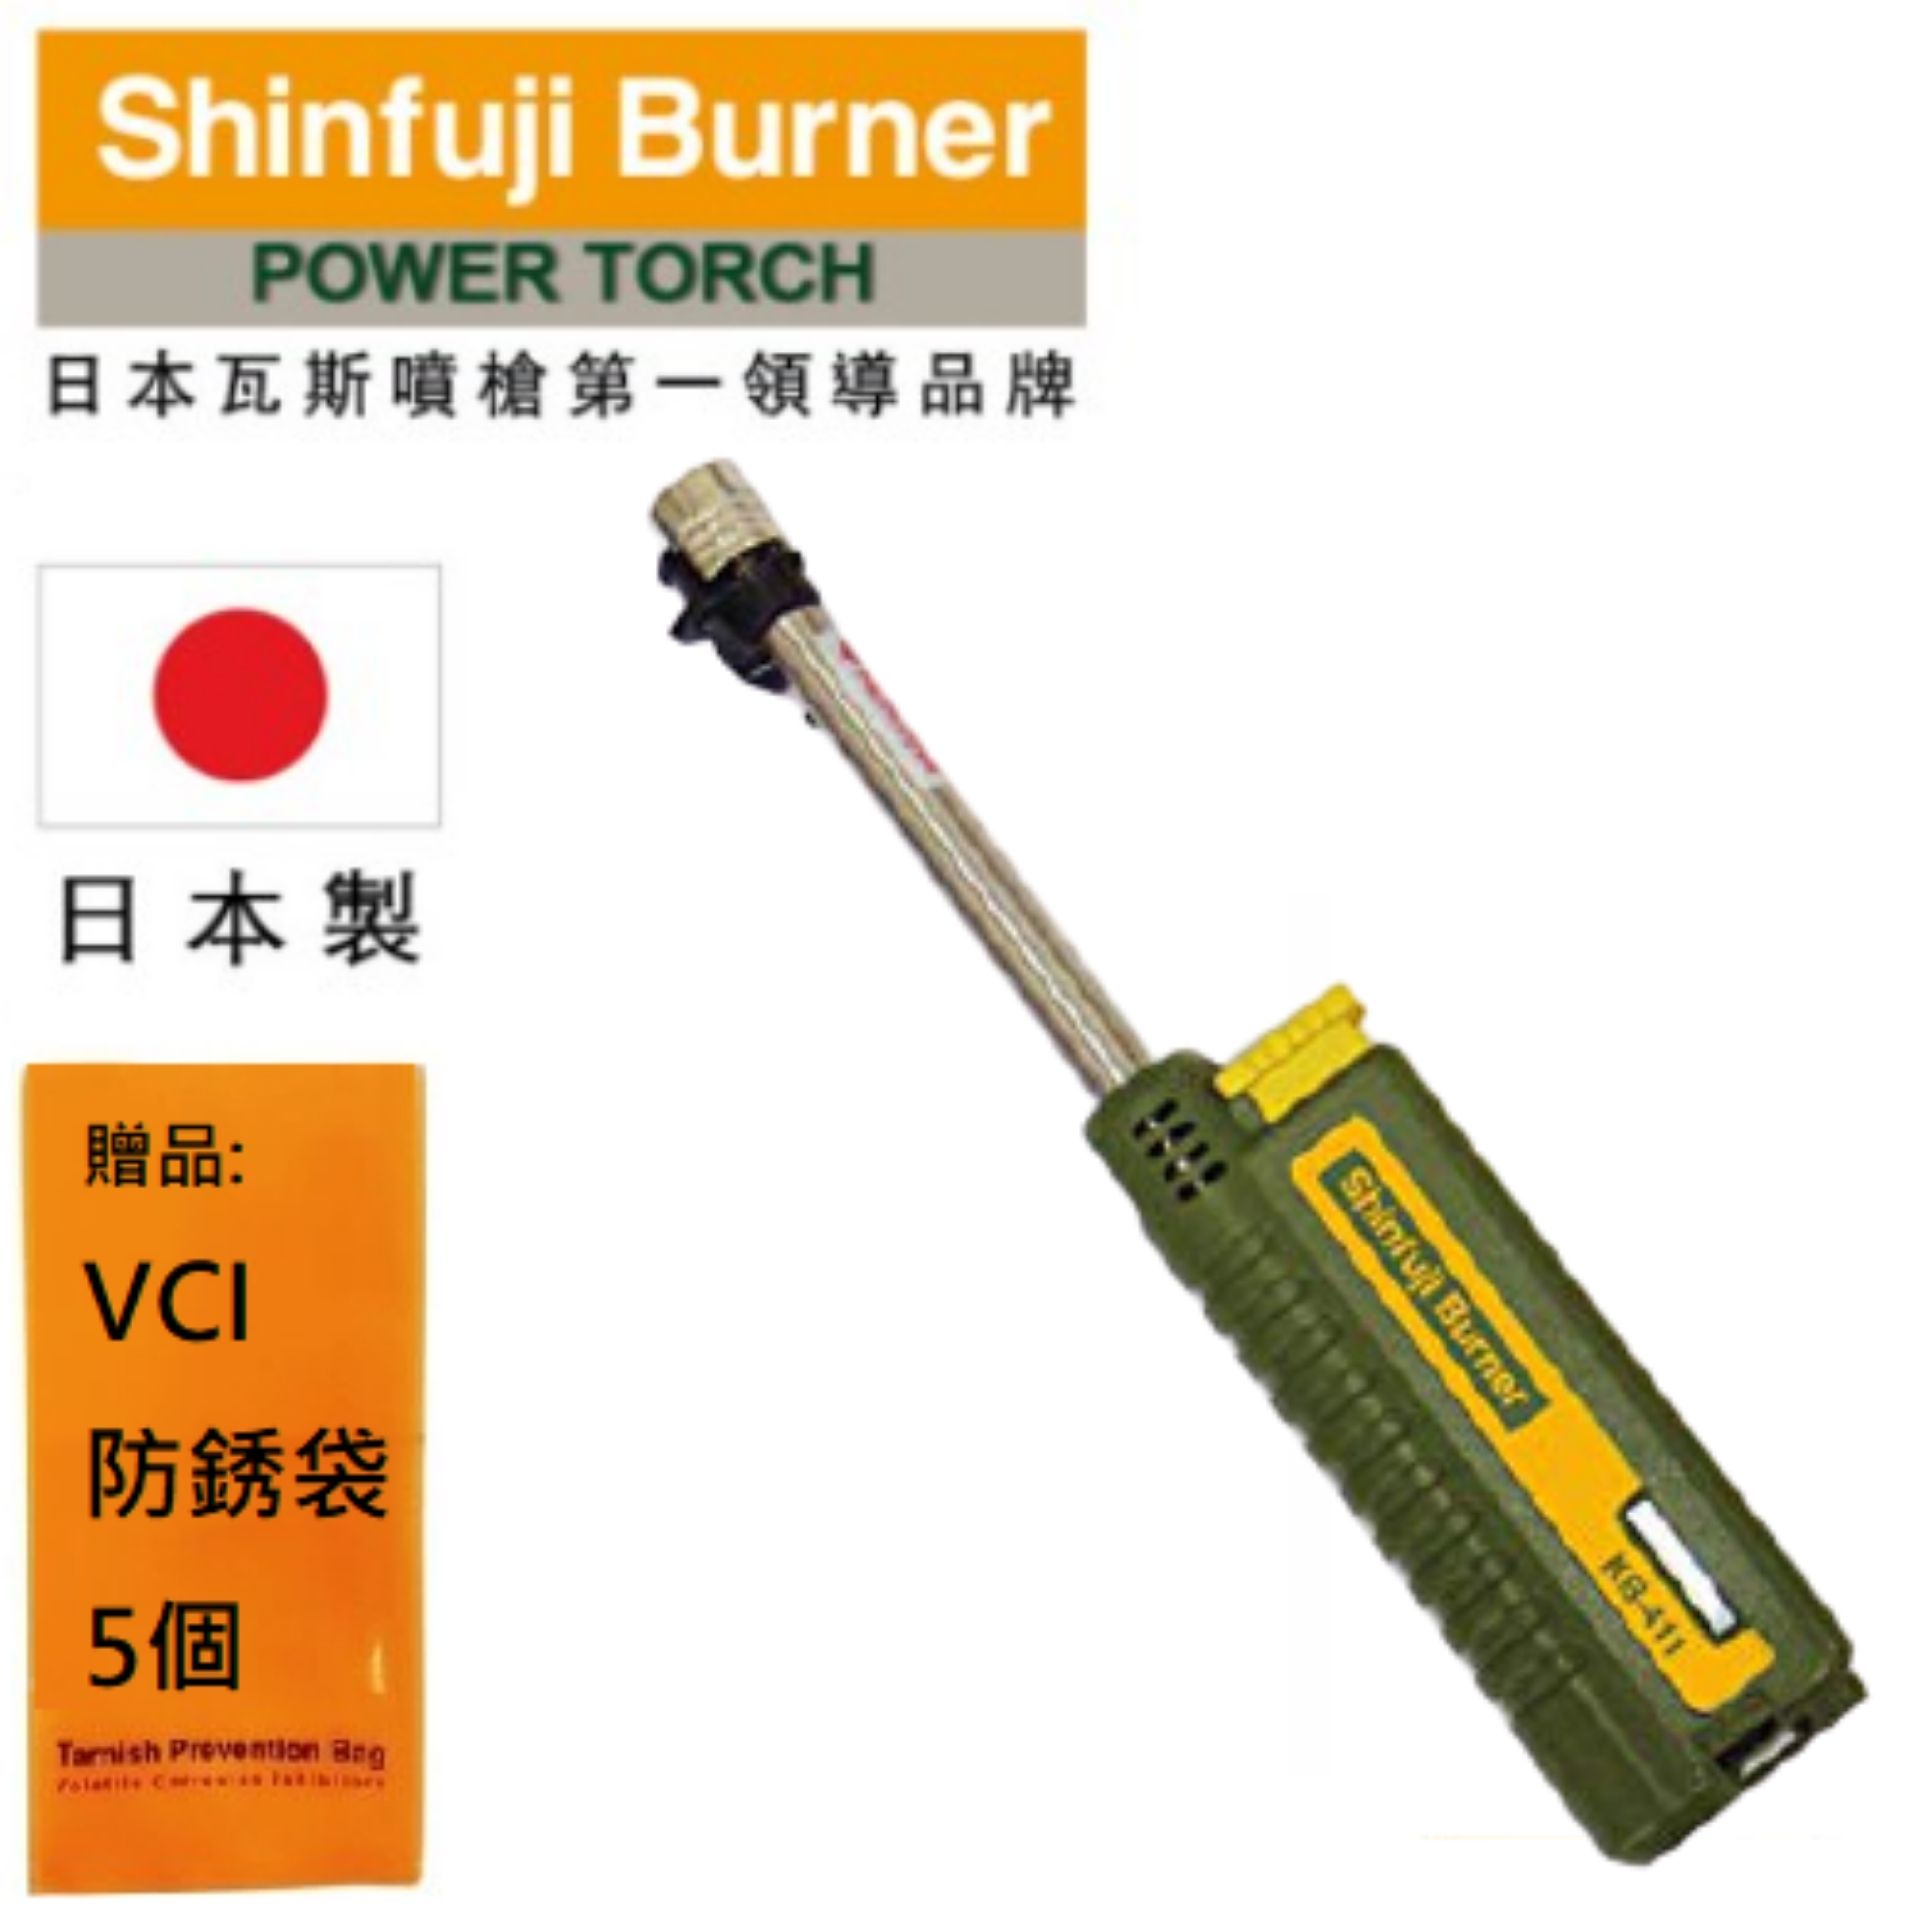 【SHINFUJI 新富士】 伸縮小型瓦斯噴槍-綠 可使用卡式瓦斯或打火機瓦斯罐重複填充